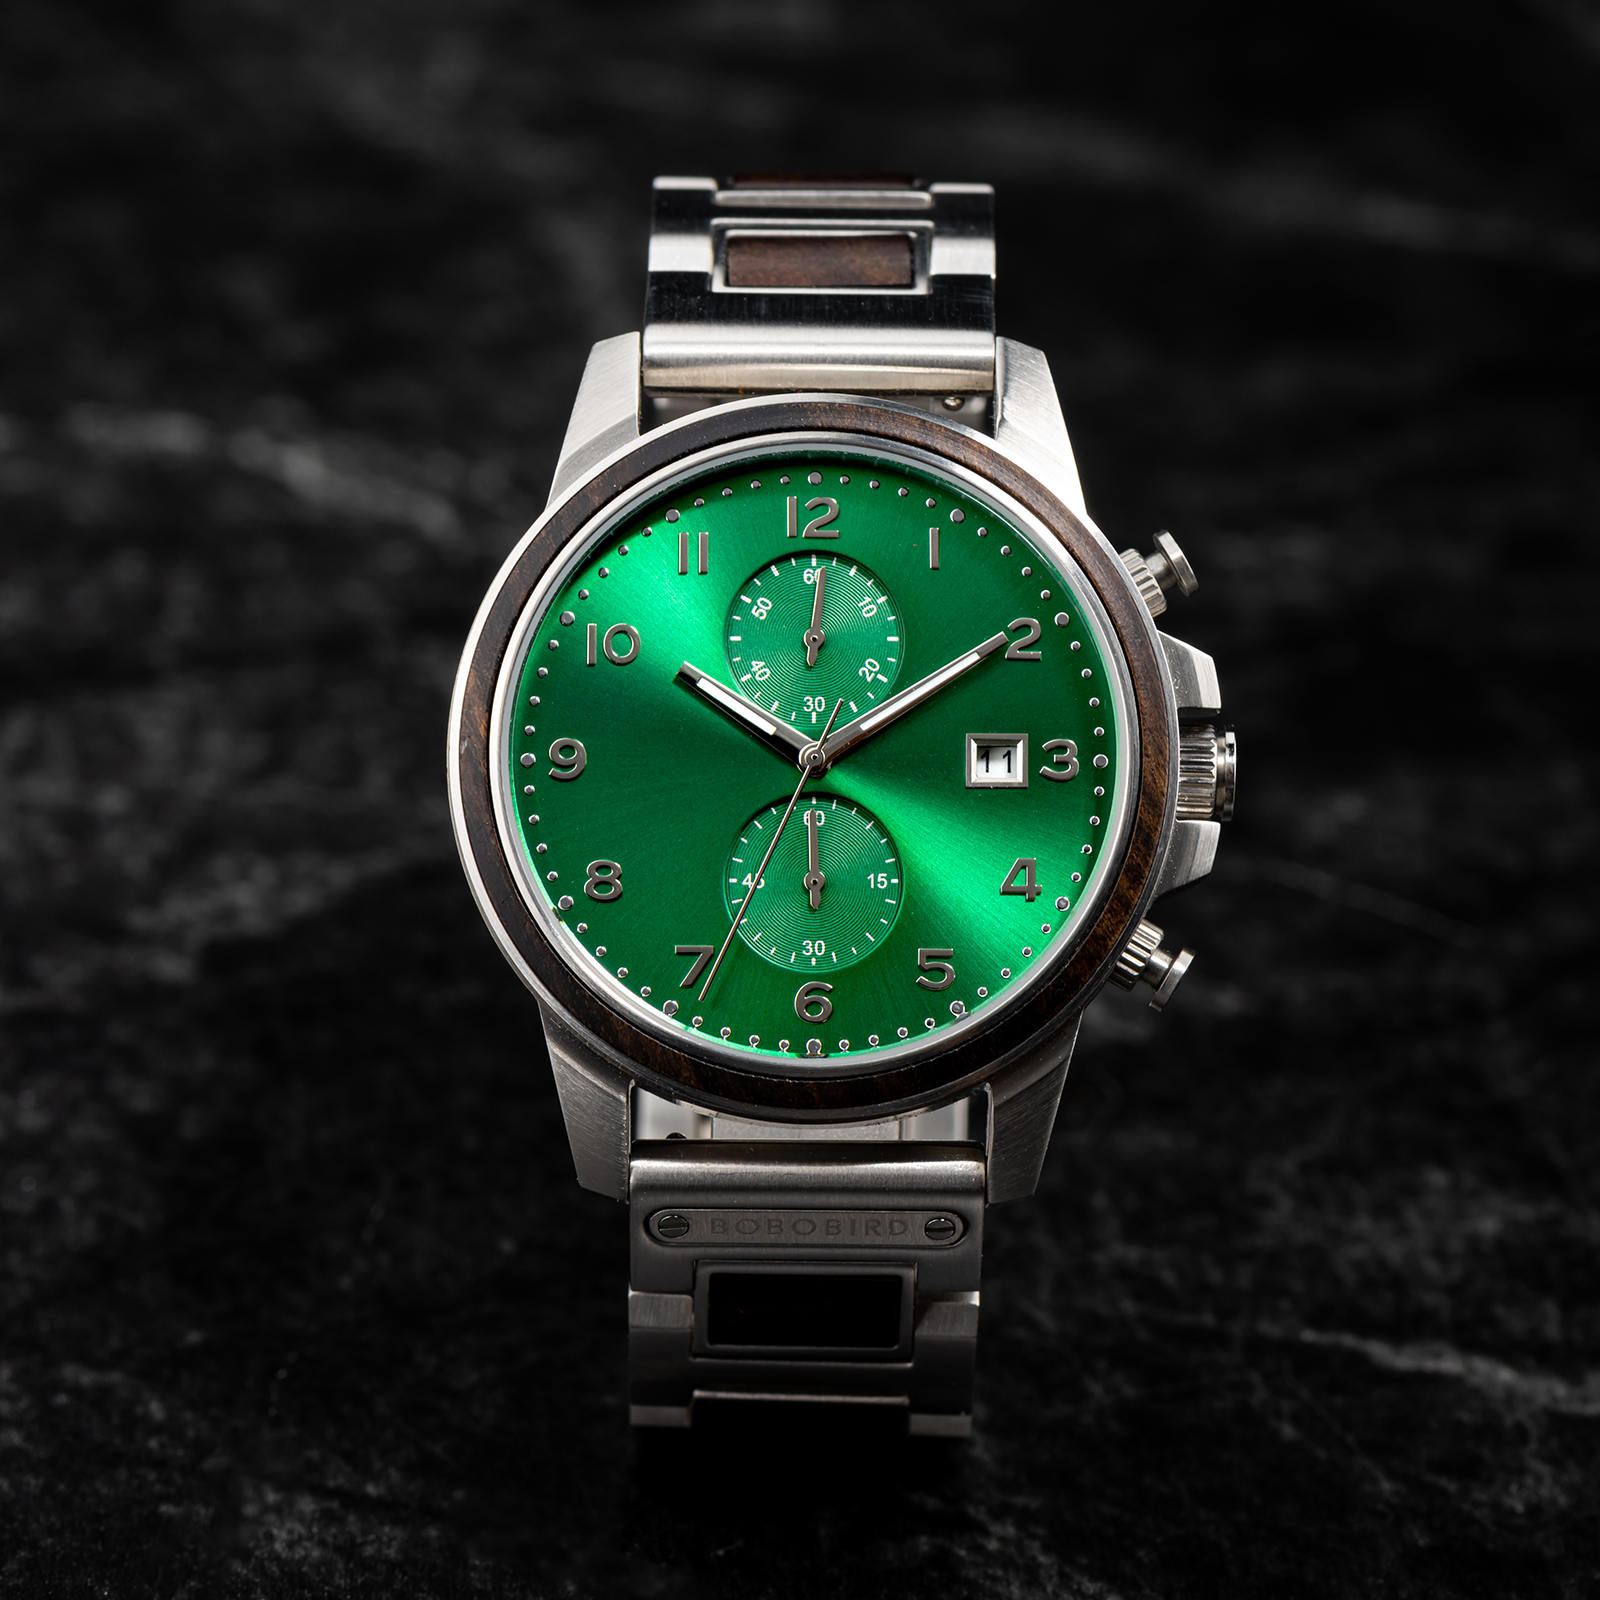 Montre classique chronographe en bois vert ébène édition limitée